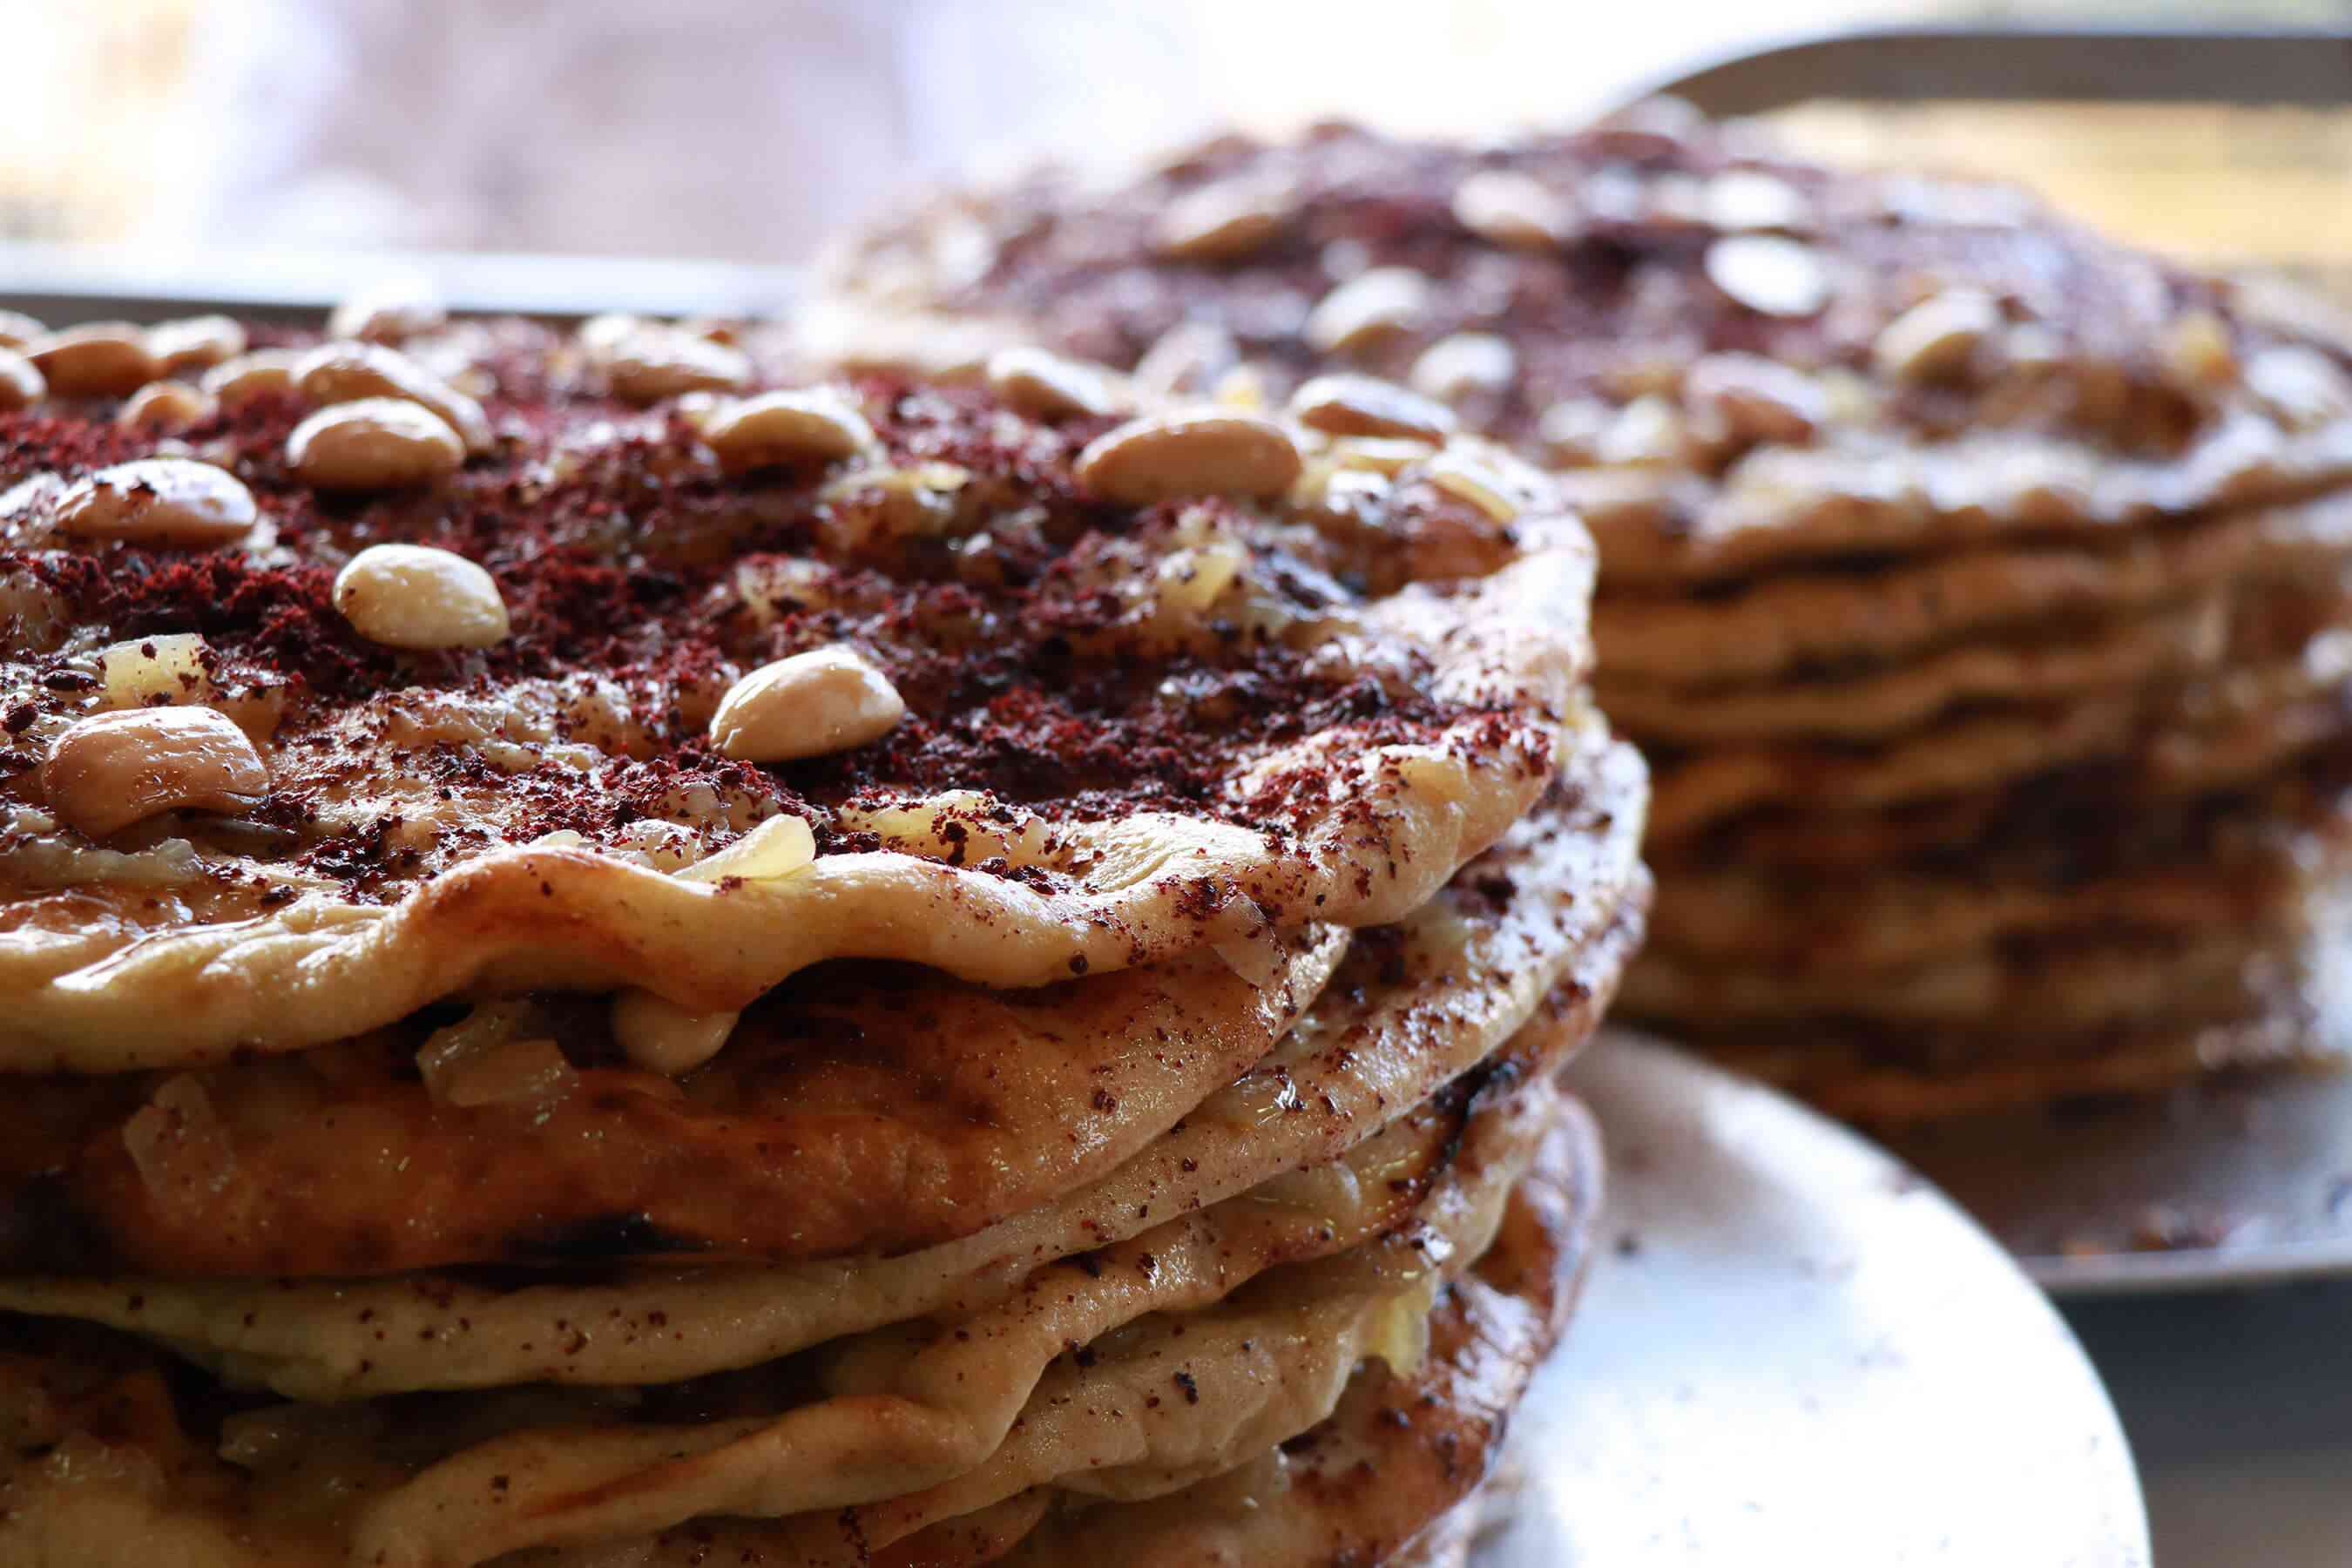 تسمم عائلة أردنية بسبب وجبة مسخّن